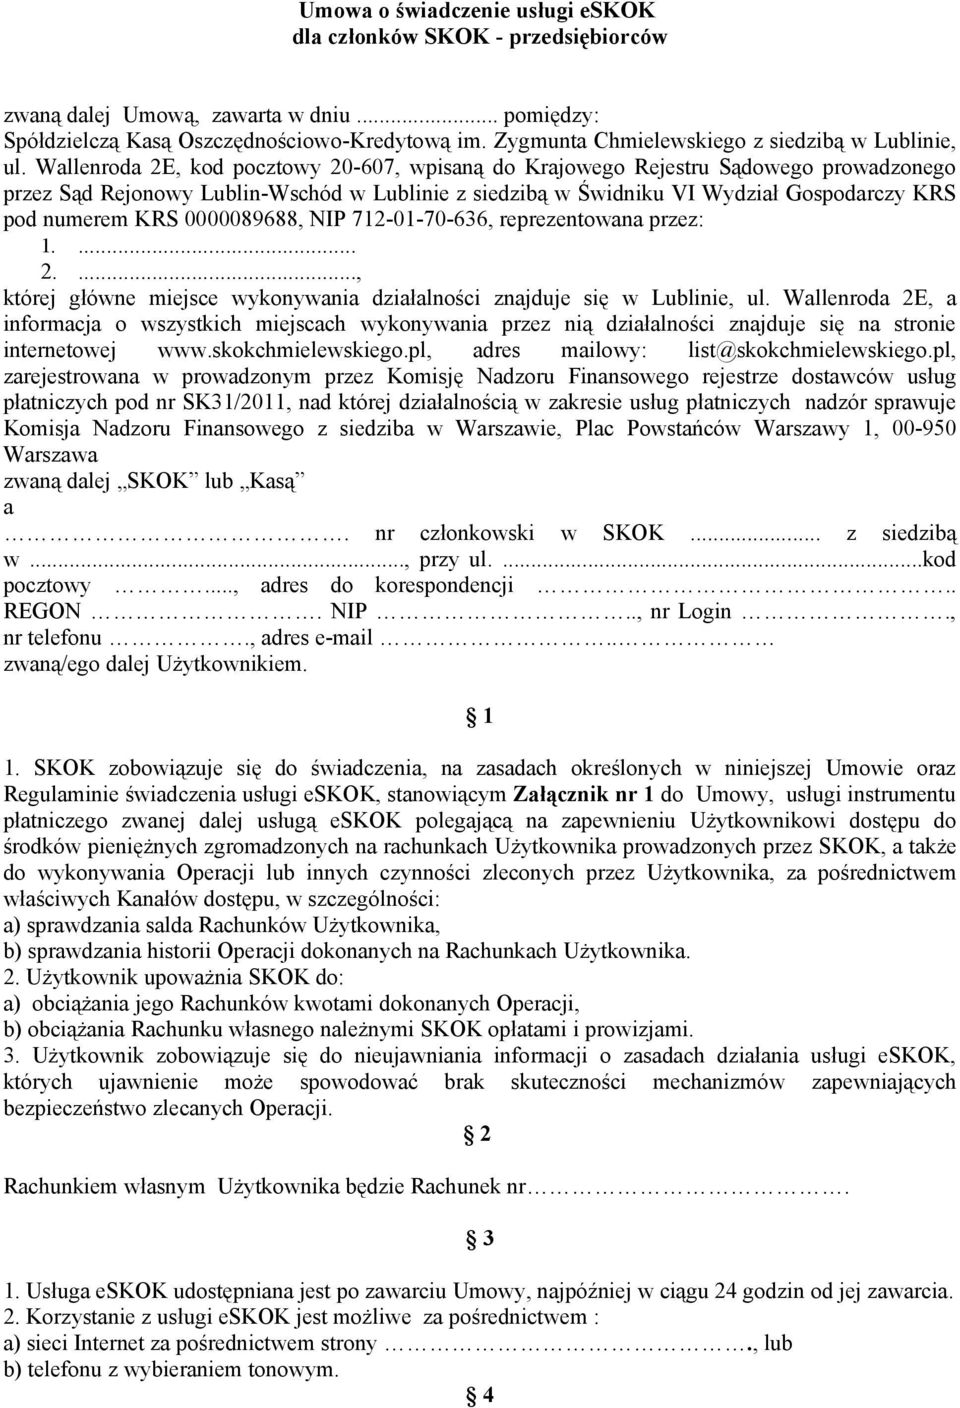 Wallenroda 2E, kod pocztowy 20-607, wpisaną do Krajowego Rejestru Sądowego prowadzonego przez Sąd Rejonowy Lublin-Wschód w Lublinie z siedzibą w Świdniku VI Wydział Gospodarczy KRS pod numerem KRS